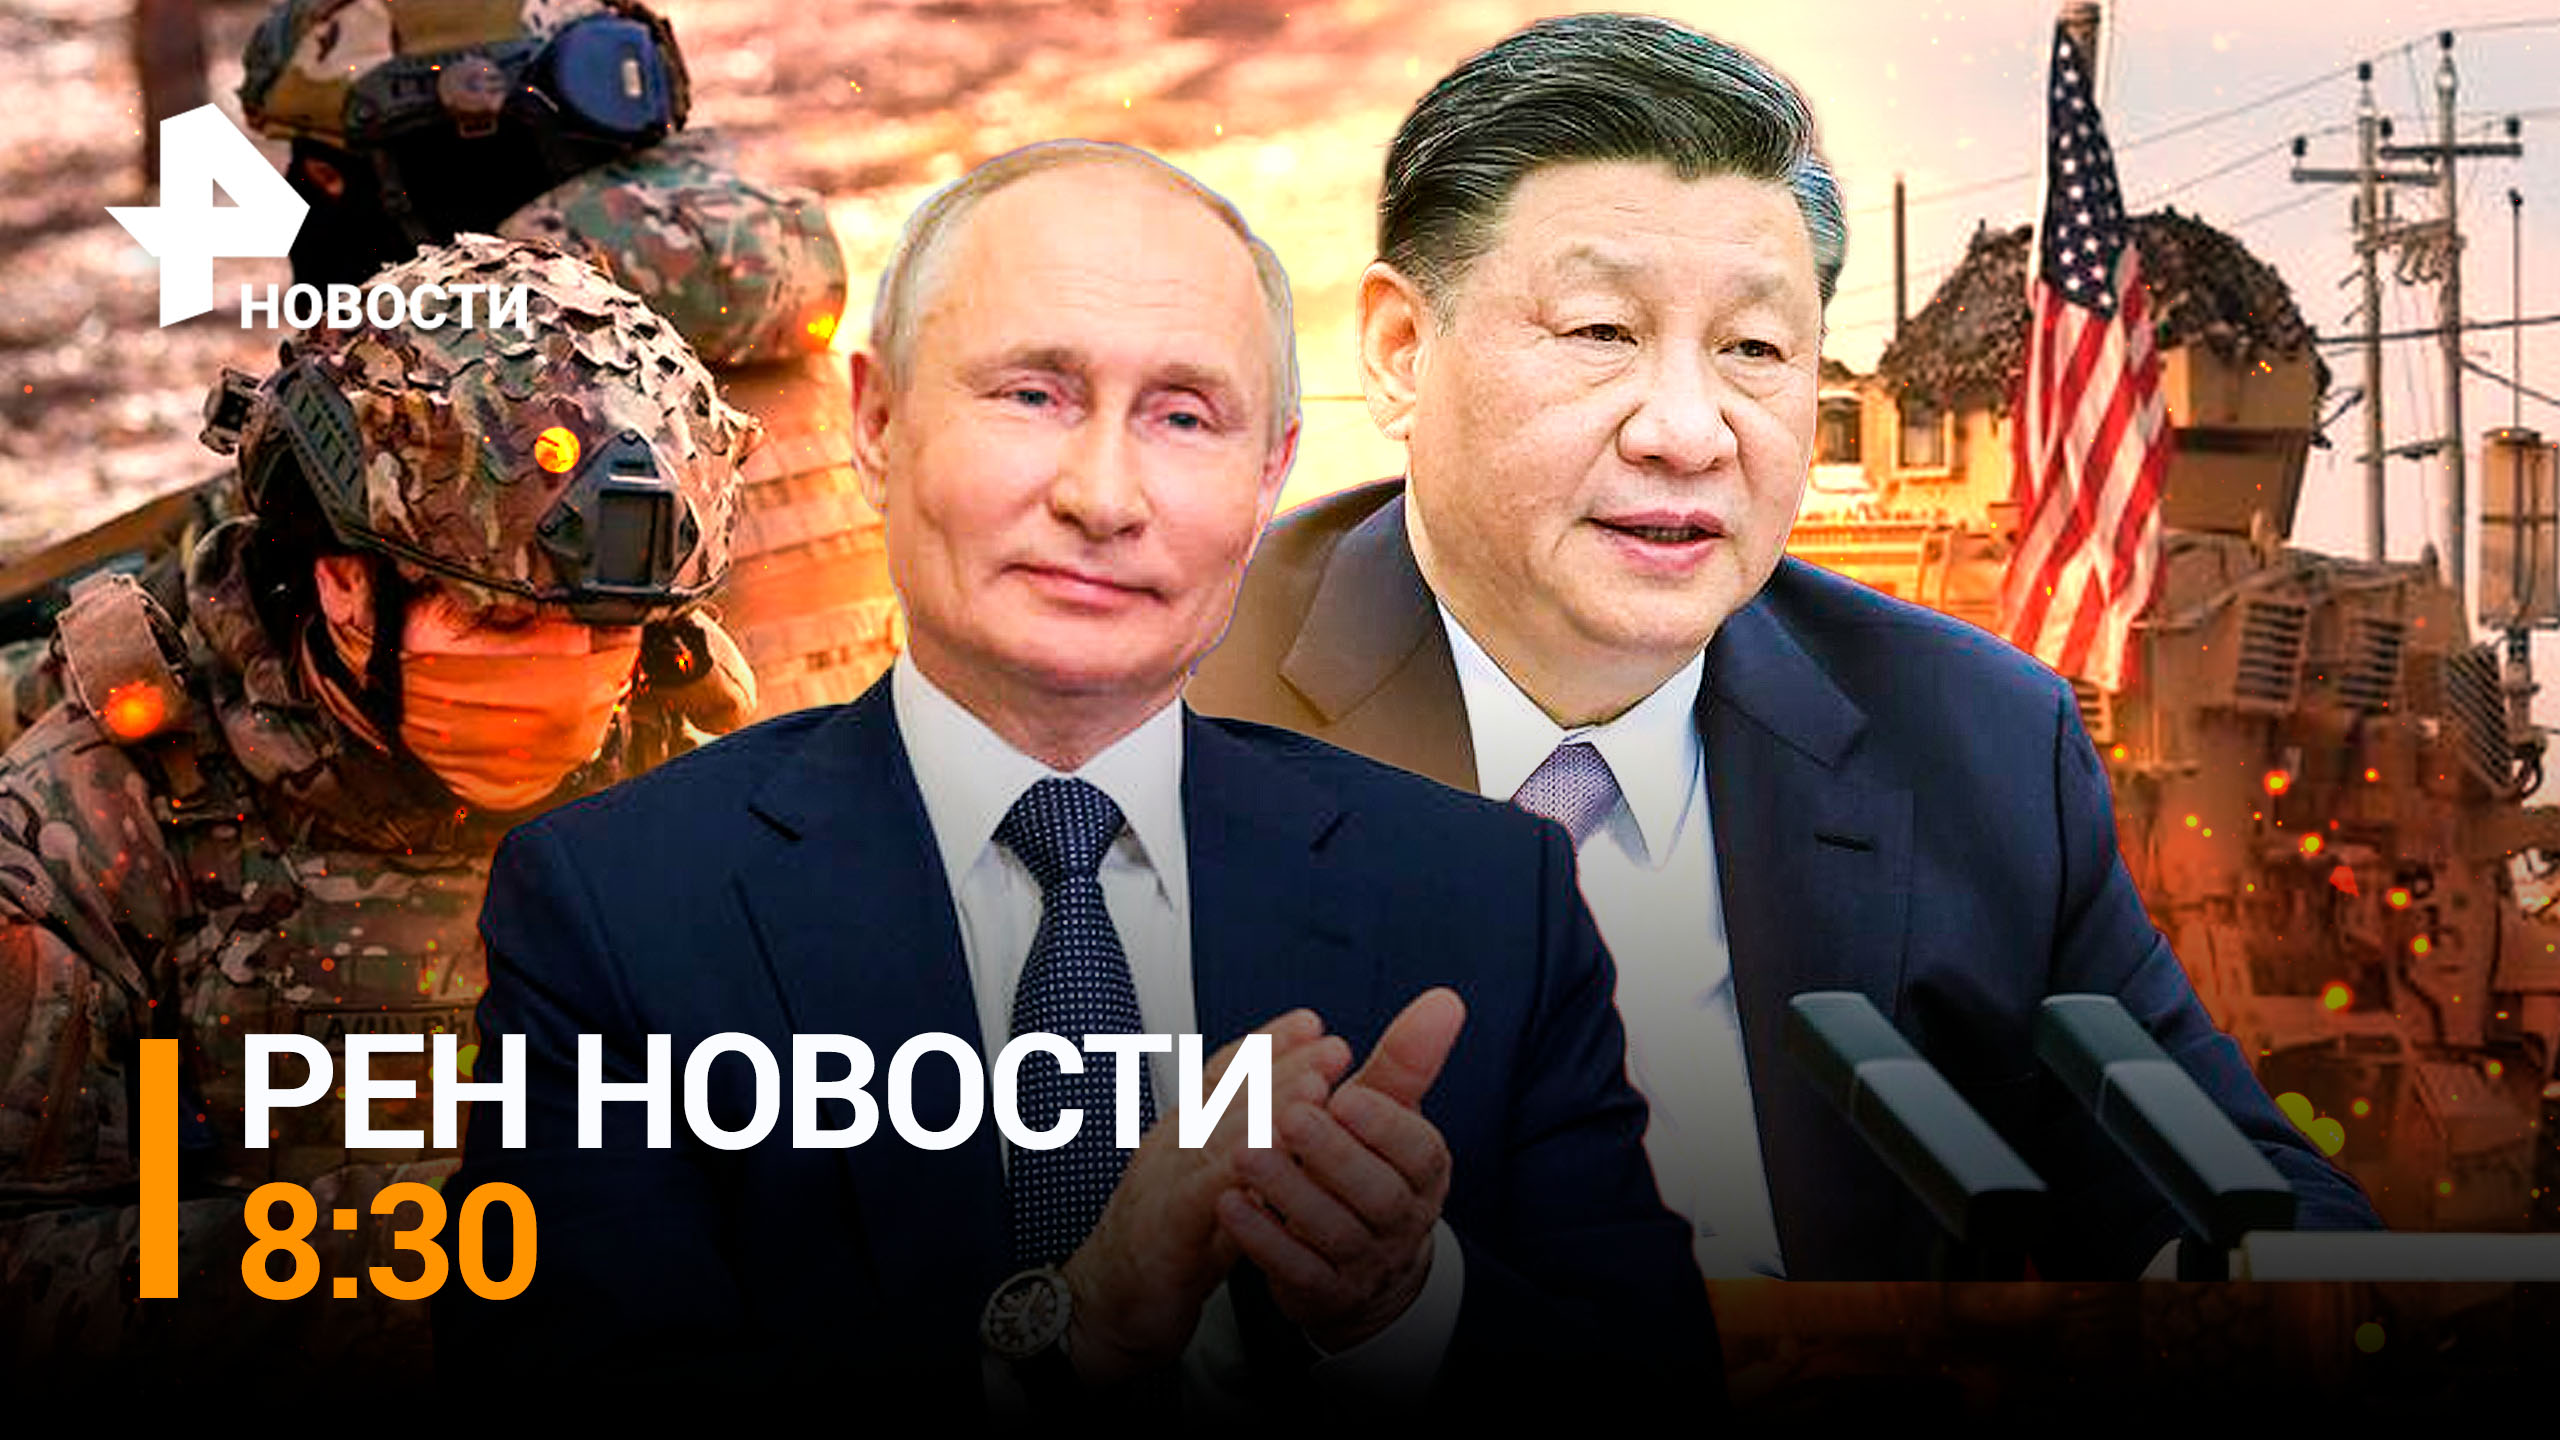 Вызов для США: как Москва готовится ко встрече Си Цзиньпина / РЕН НОВОСТИ 8:30 от 20.03.2023